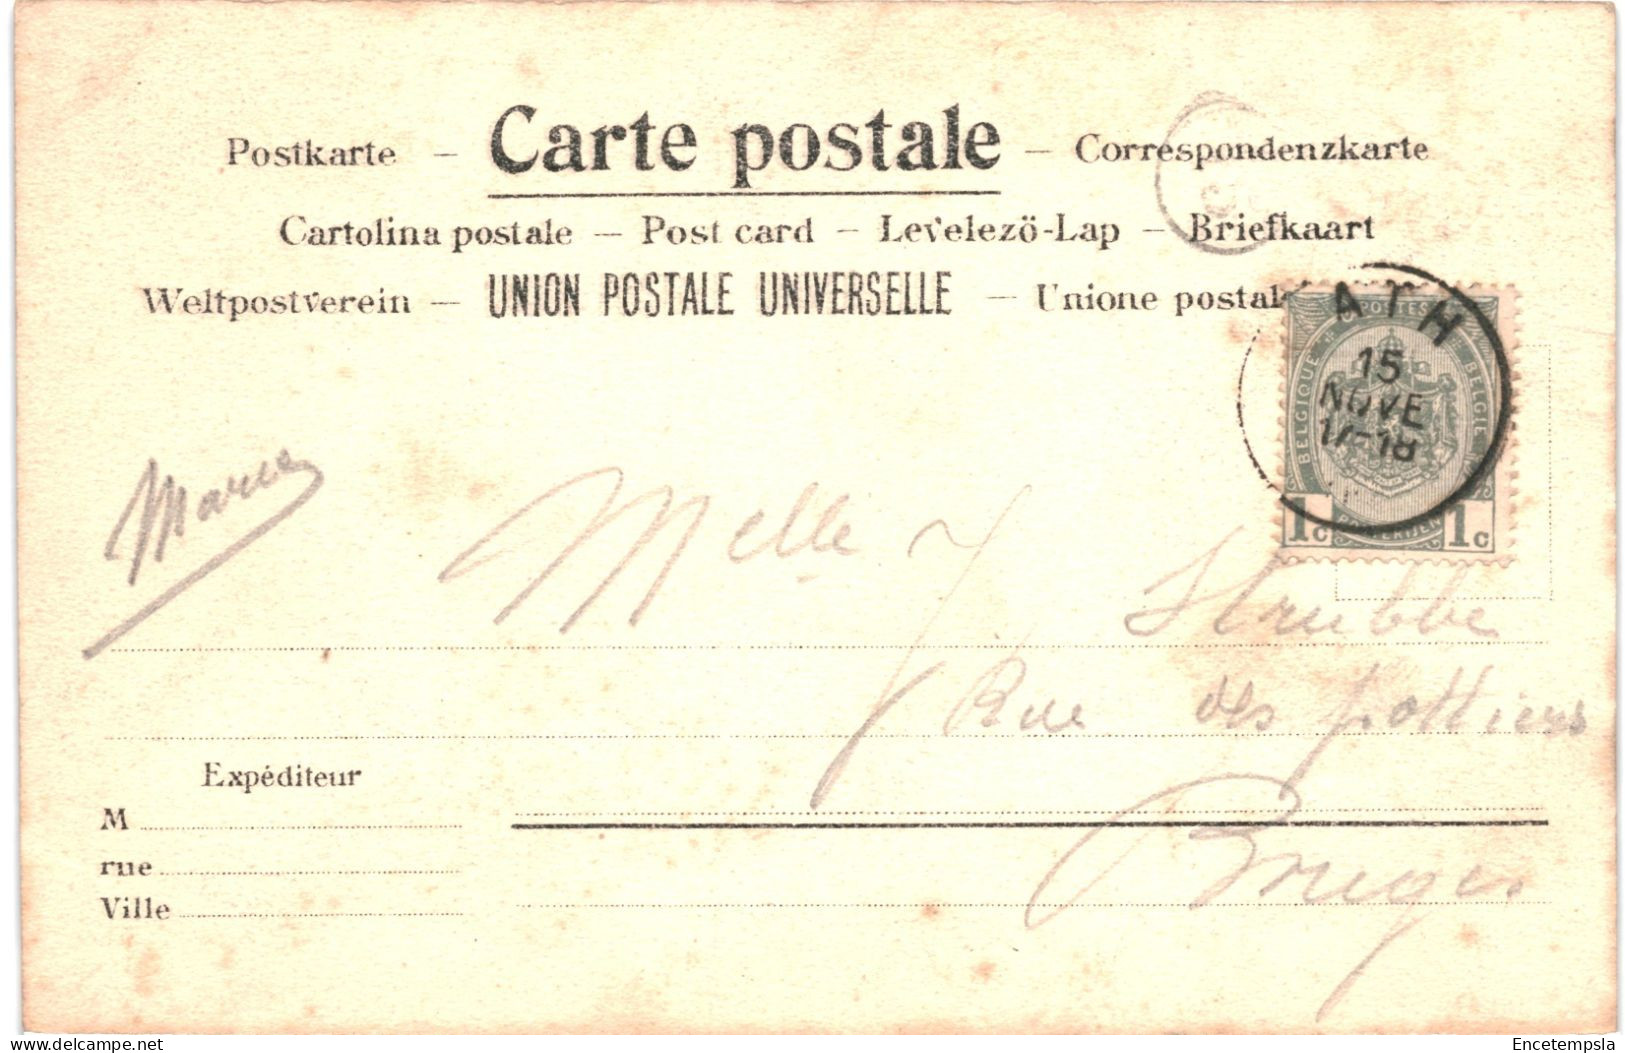 CPA Carte Postale Belgique Saint-Ghislain Rue D'Ath Et L'église  Animée  Début 1900 VM73926ok - Saint-Ghislain